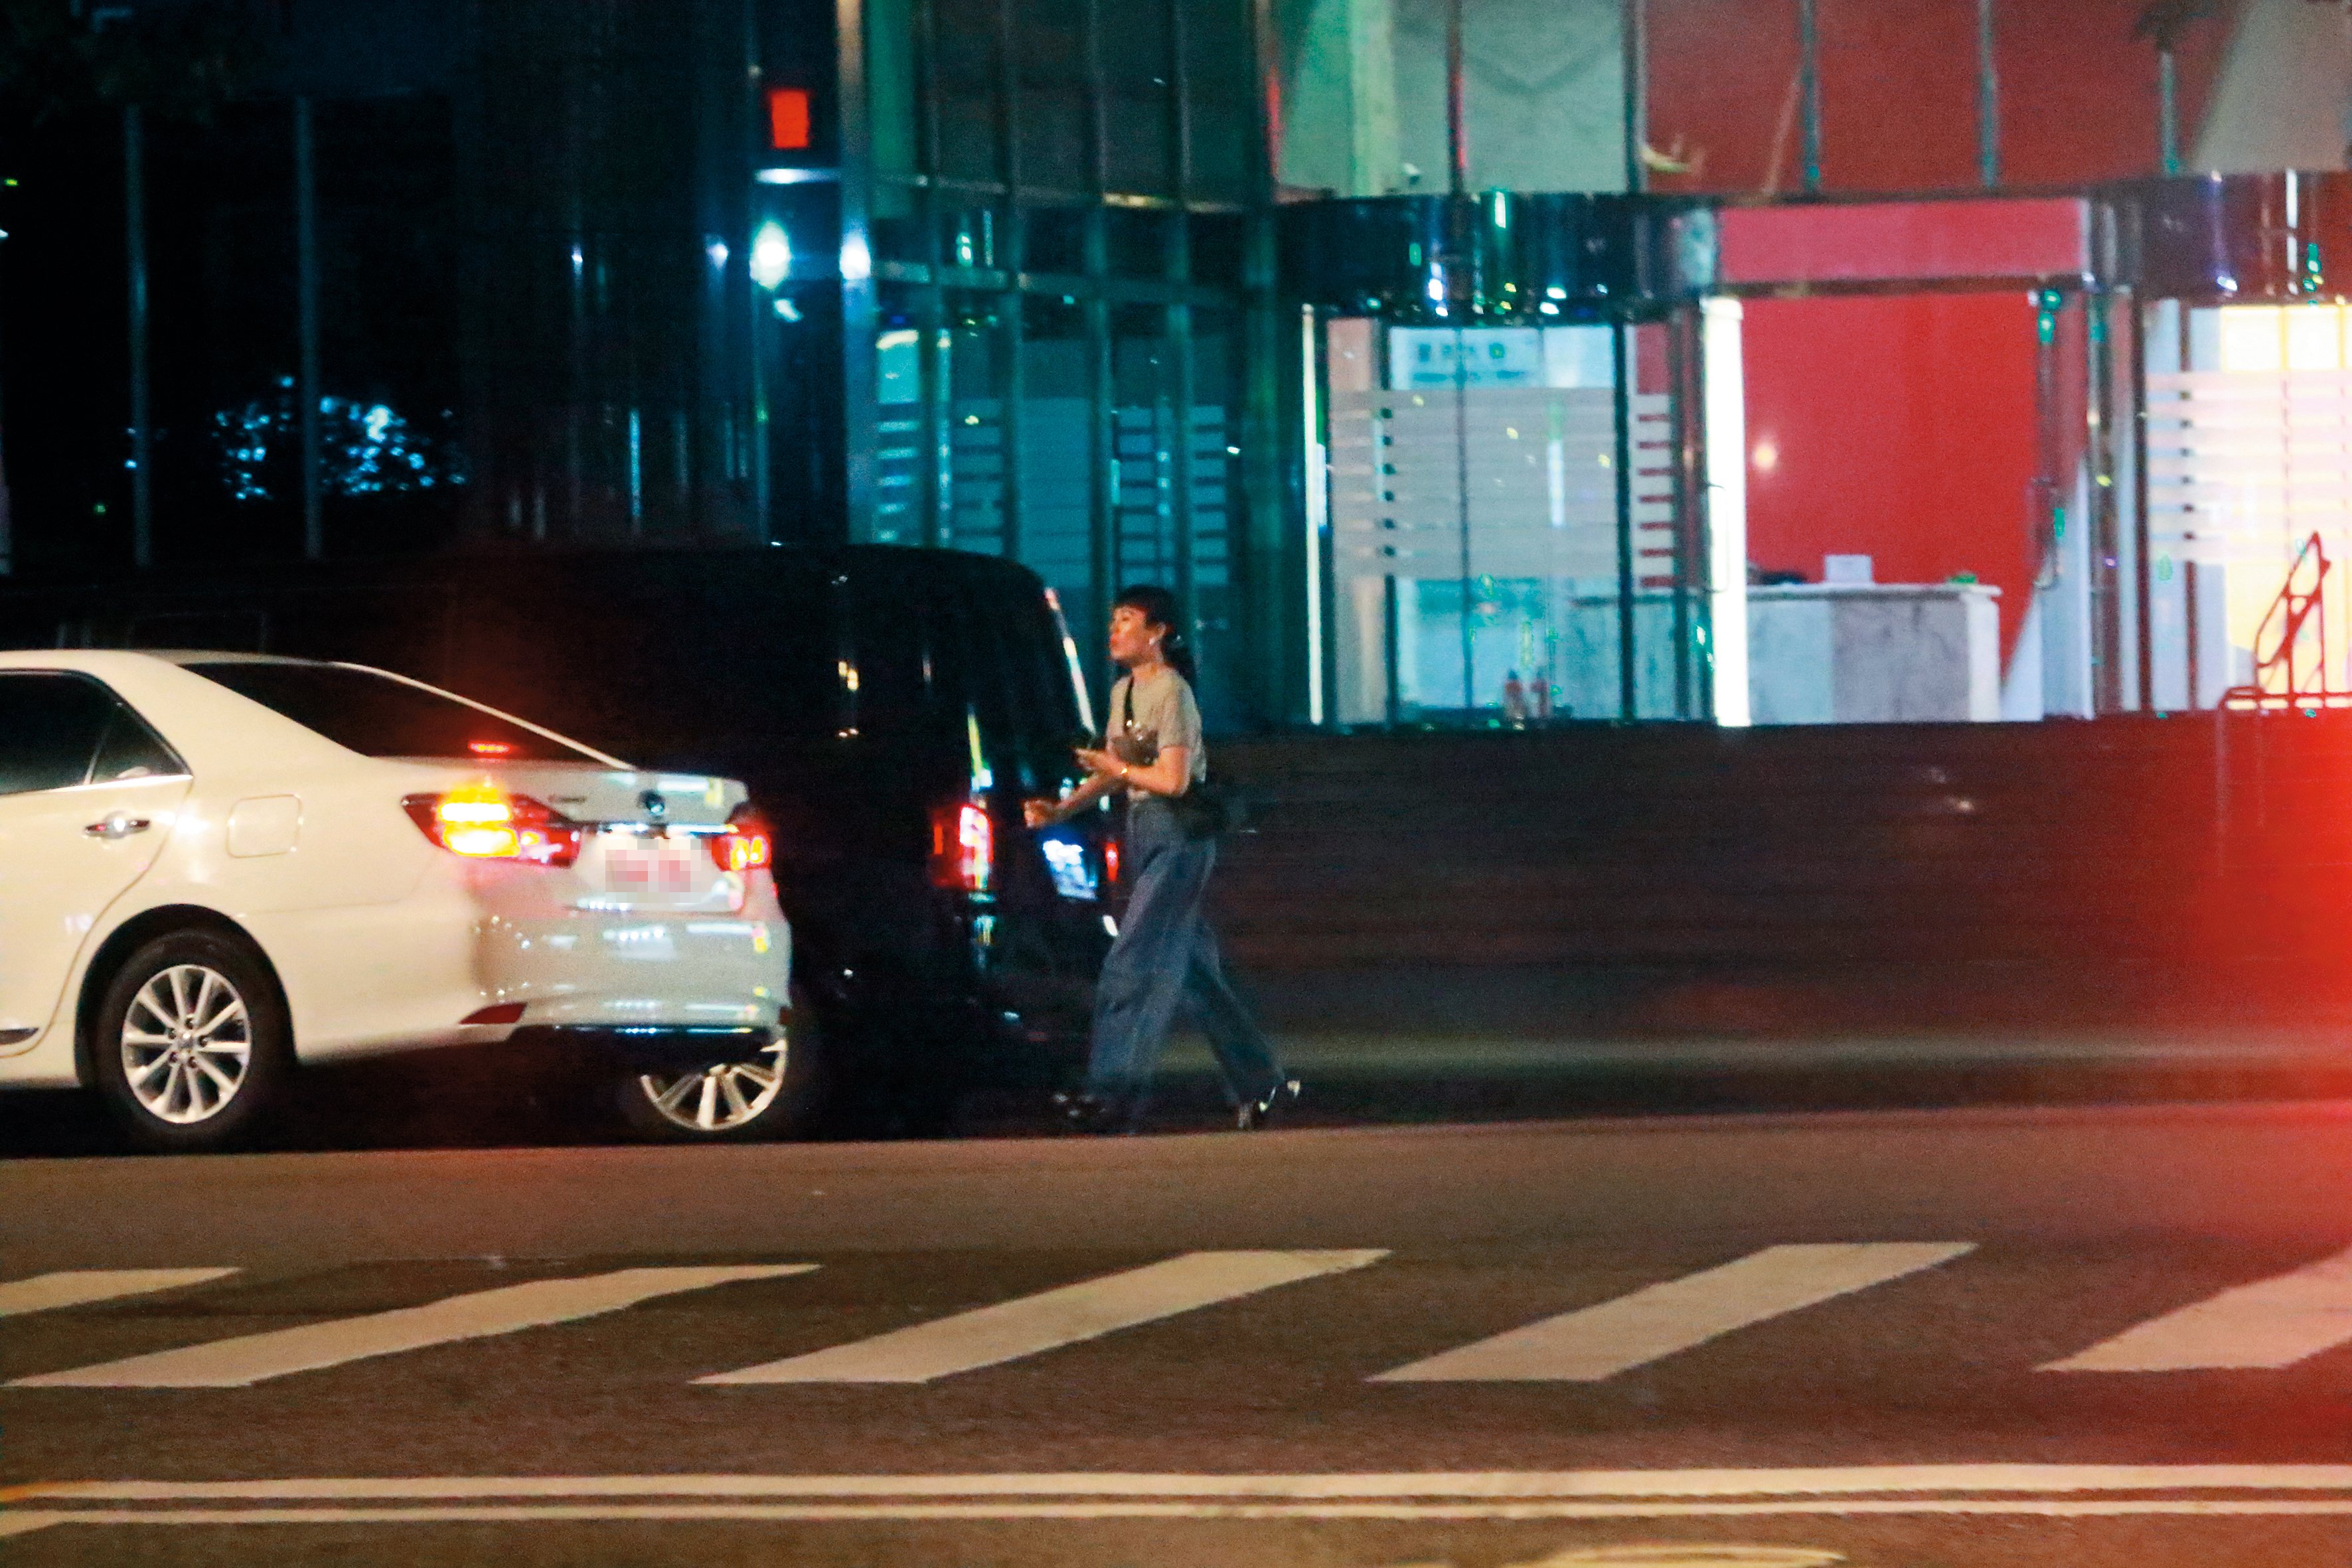 11/8，23：03魏如萱邊喝水邊在路邊耐心等待多元計程車到來，最後搭車回家